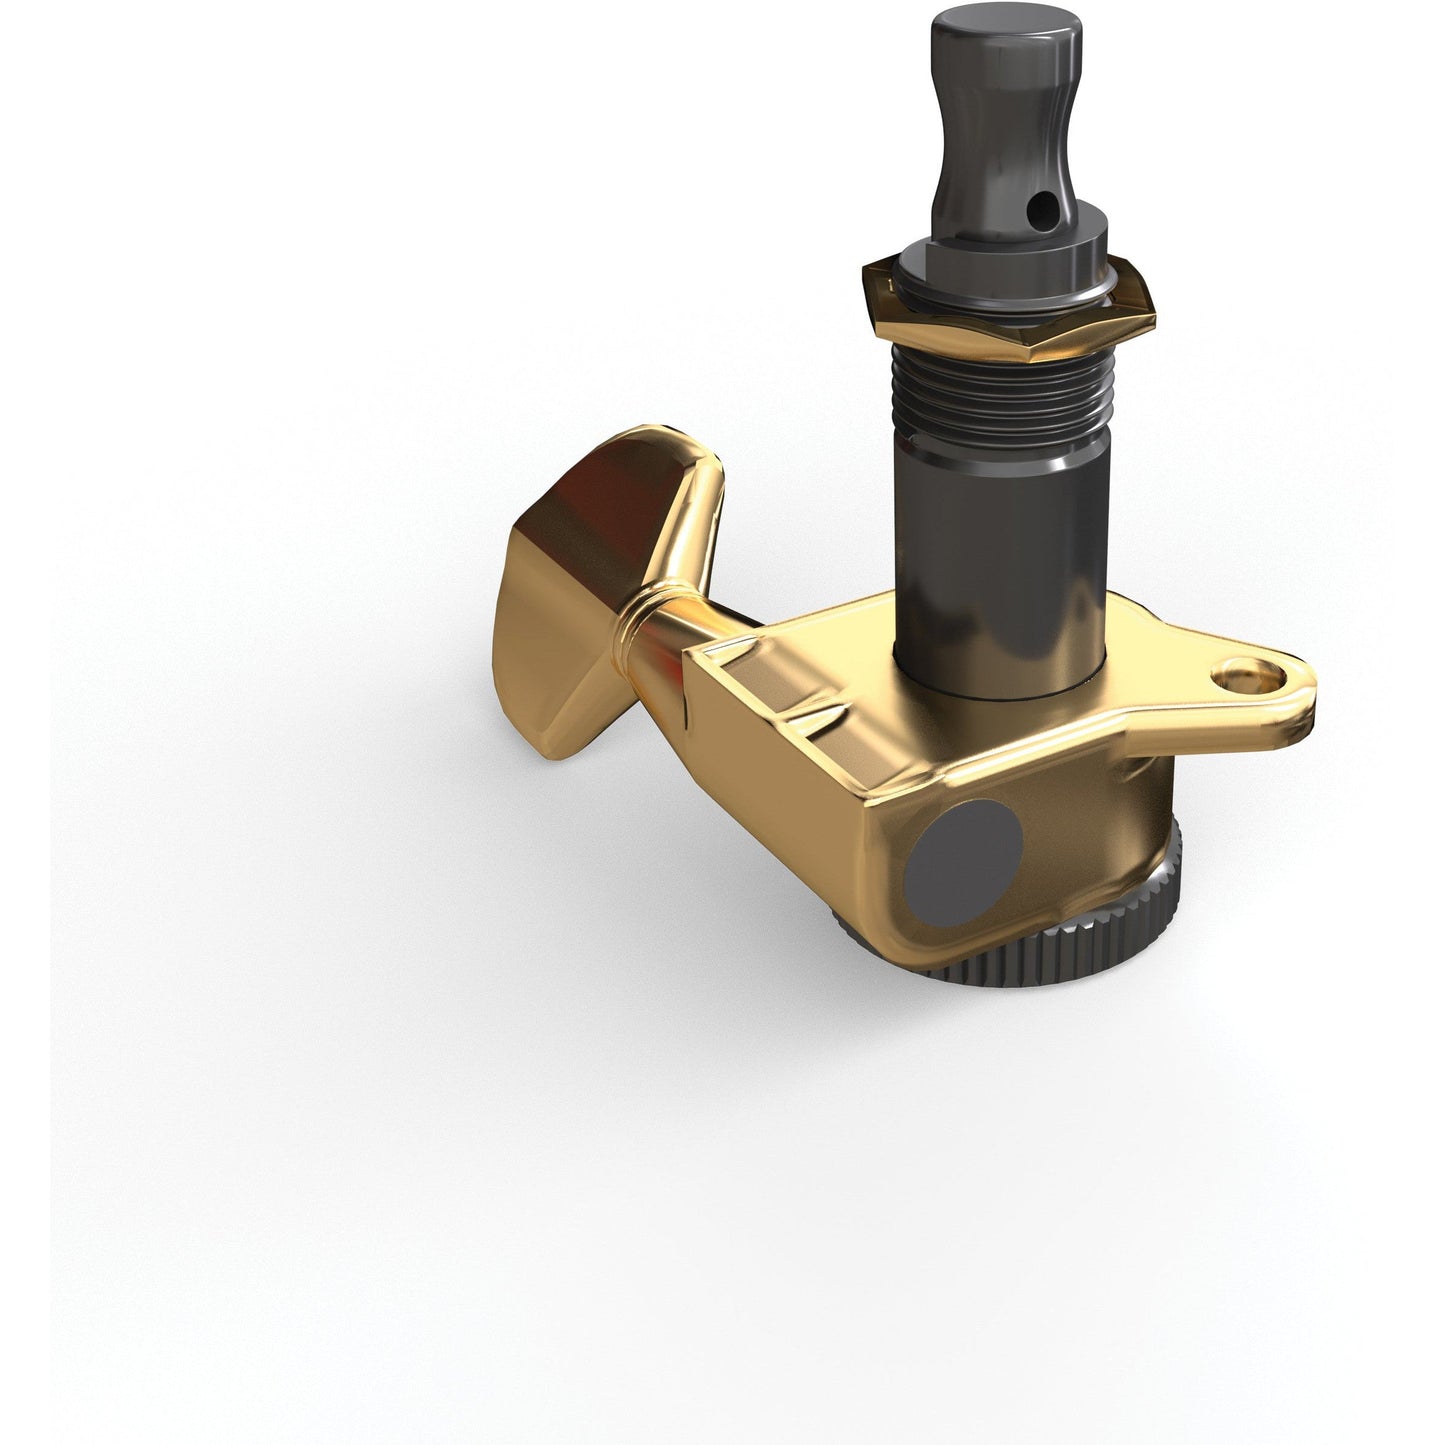 D'Addario Auto-Trim Locking Tuning Machines, 6 In-Line setup, Gold